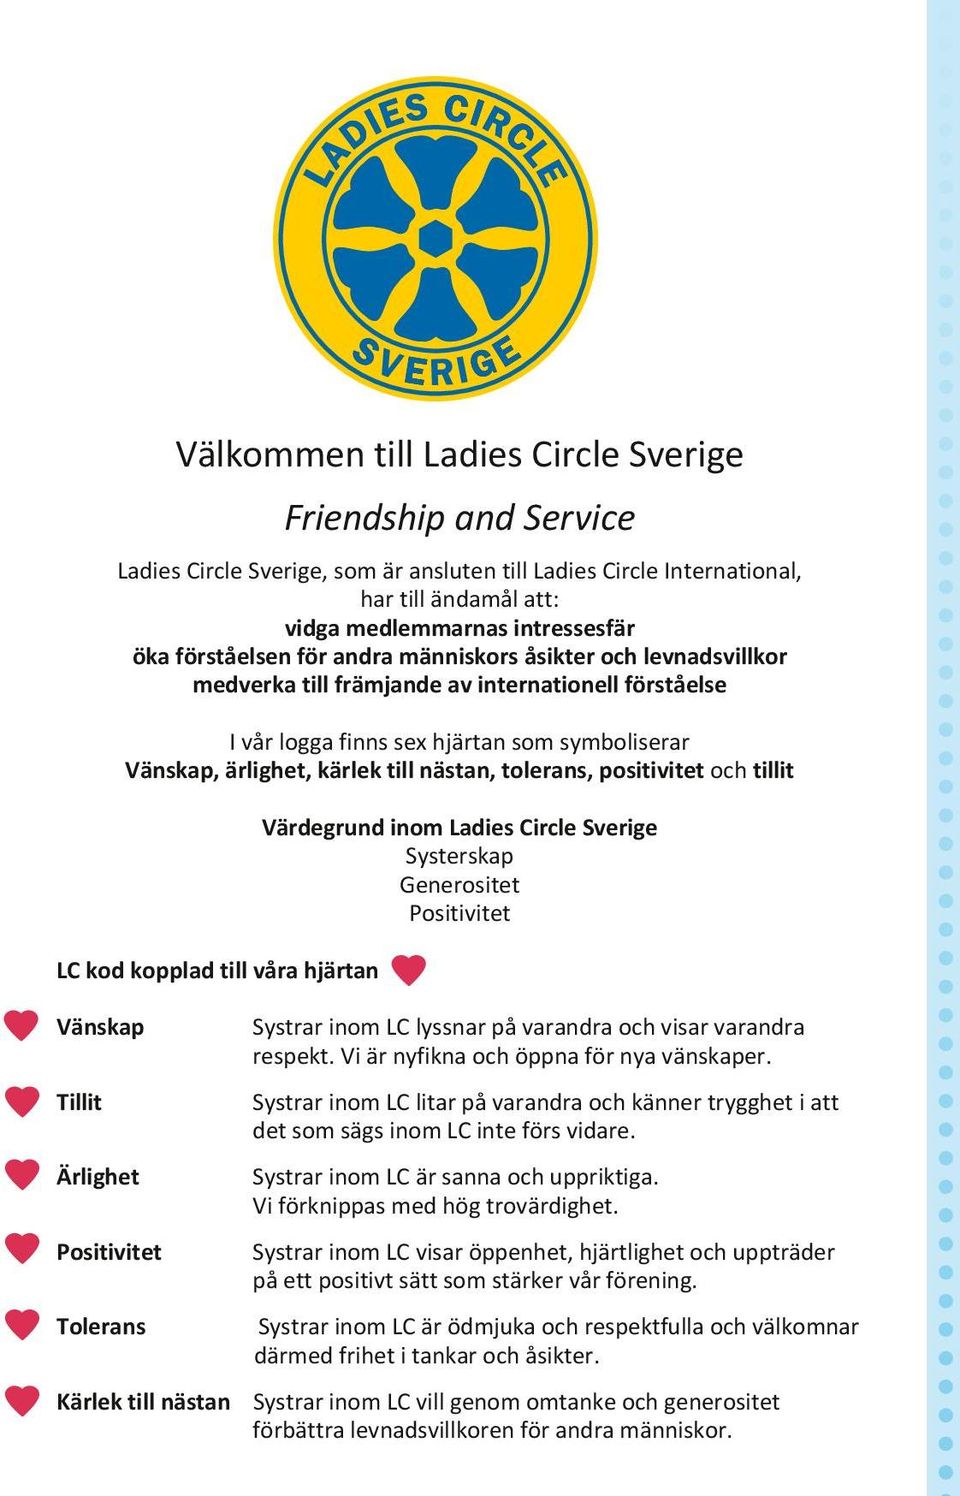 tolerans, positivitet och tillit LC kod kopplad till våra hjärtan Värdegrund inom Ladies Circle Sverige Systerskap Generositet Positivitet Vänskap Systrar inom LC lyssnar på varandra och visar